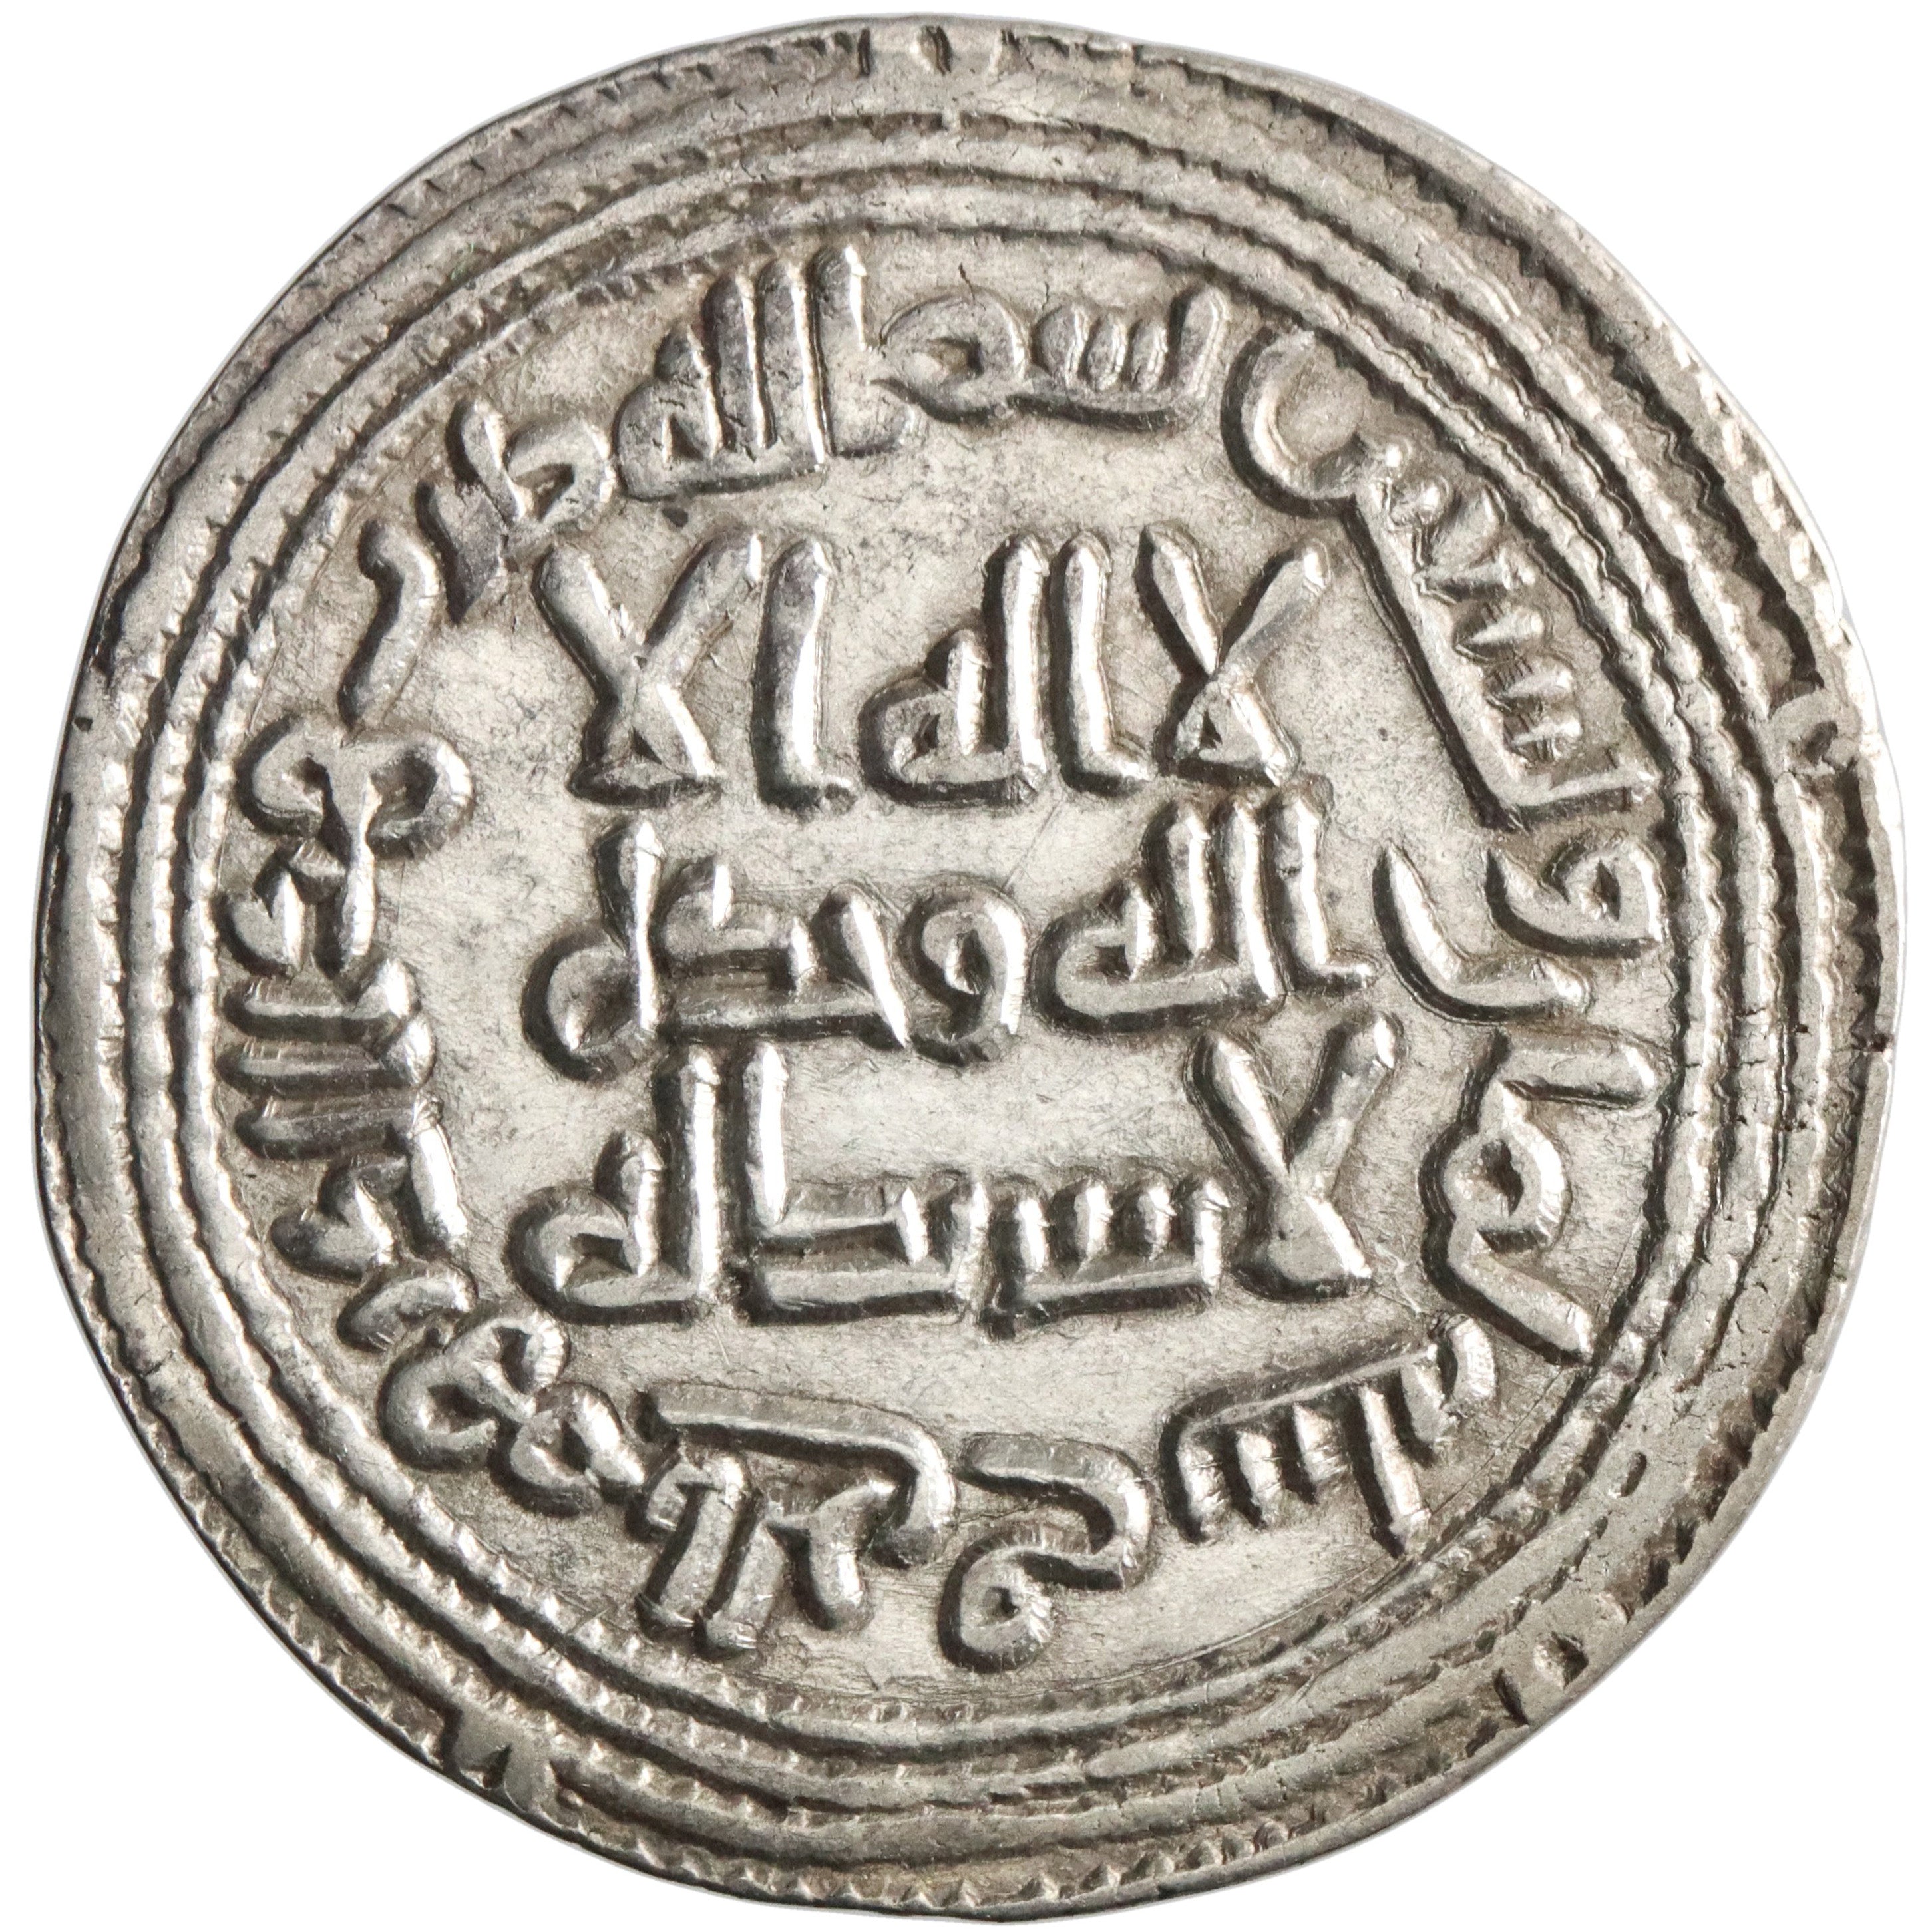 Umayyad, Sulayman, silver dirham, al-Rayy mint, AH 98